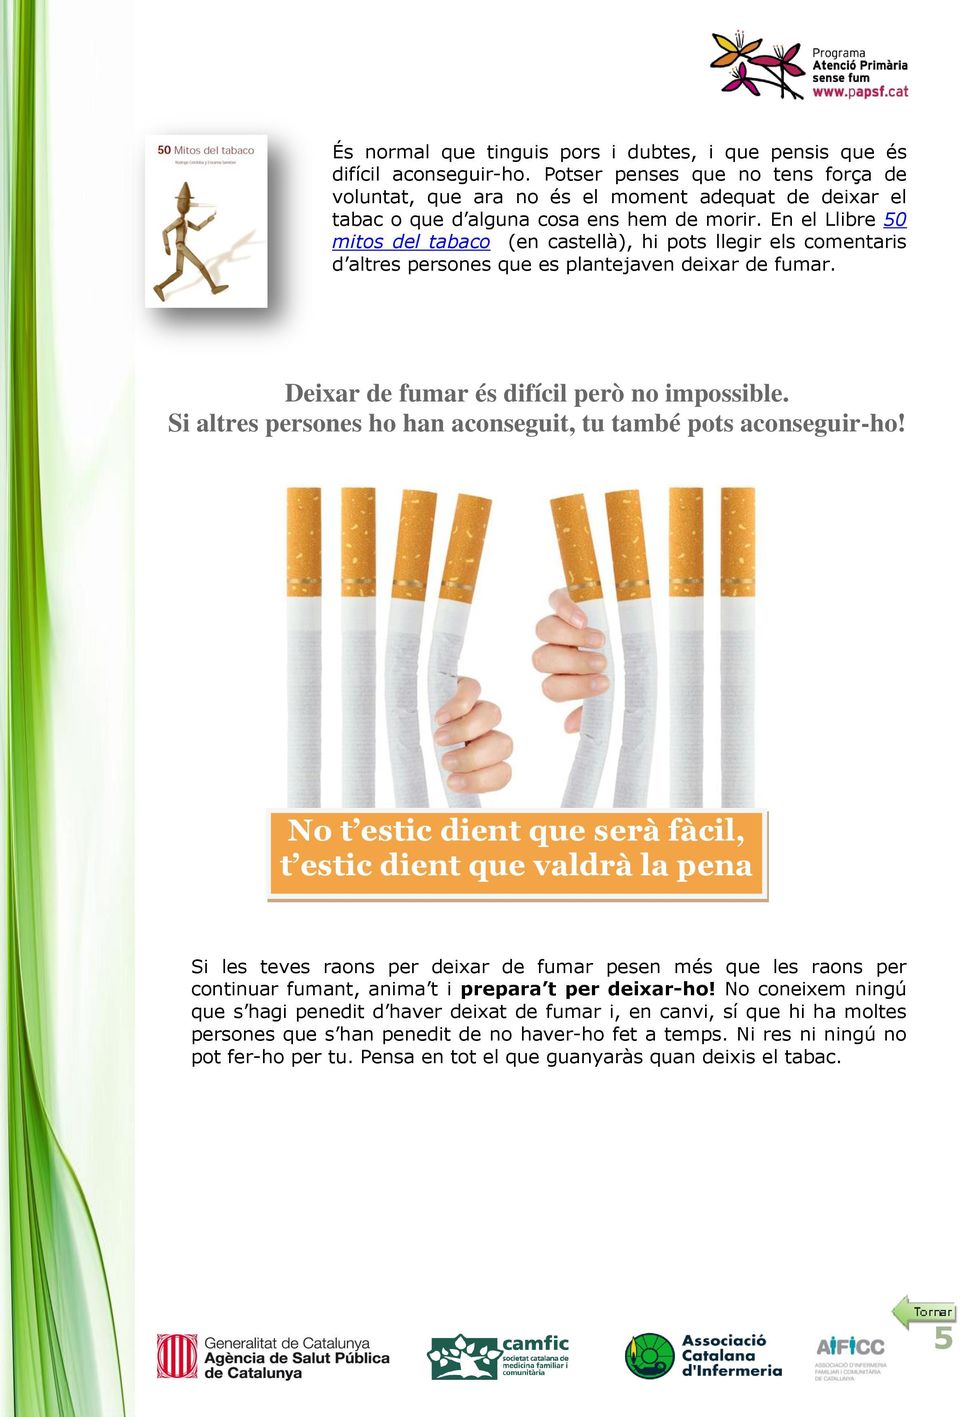 En el Llibre 50 mitos del tabaco (en castellà), hi pots llegir els comentaris d altres persones que es plantejaven deixar de fumar. Deixar de fumar és difícil però no impossible.